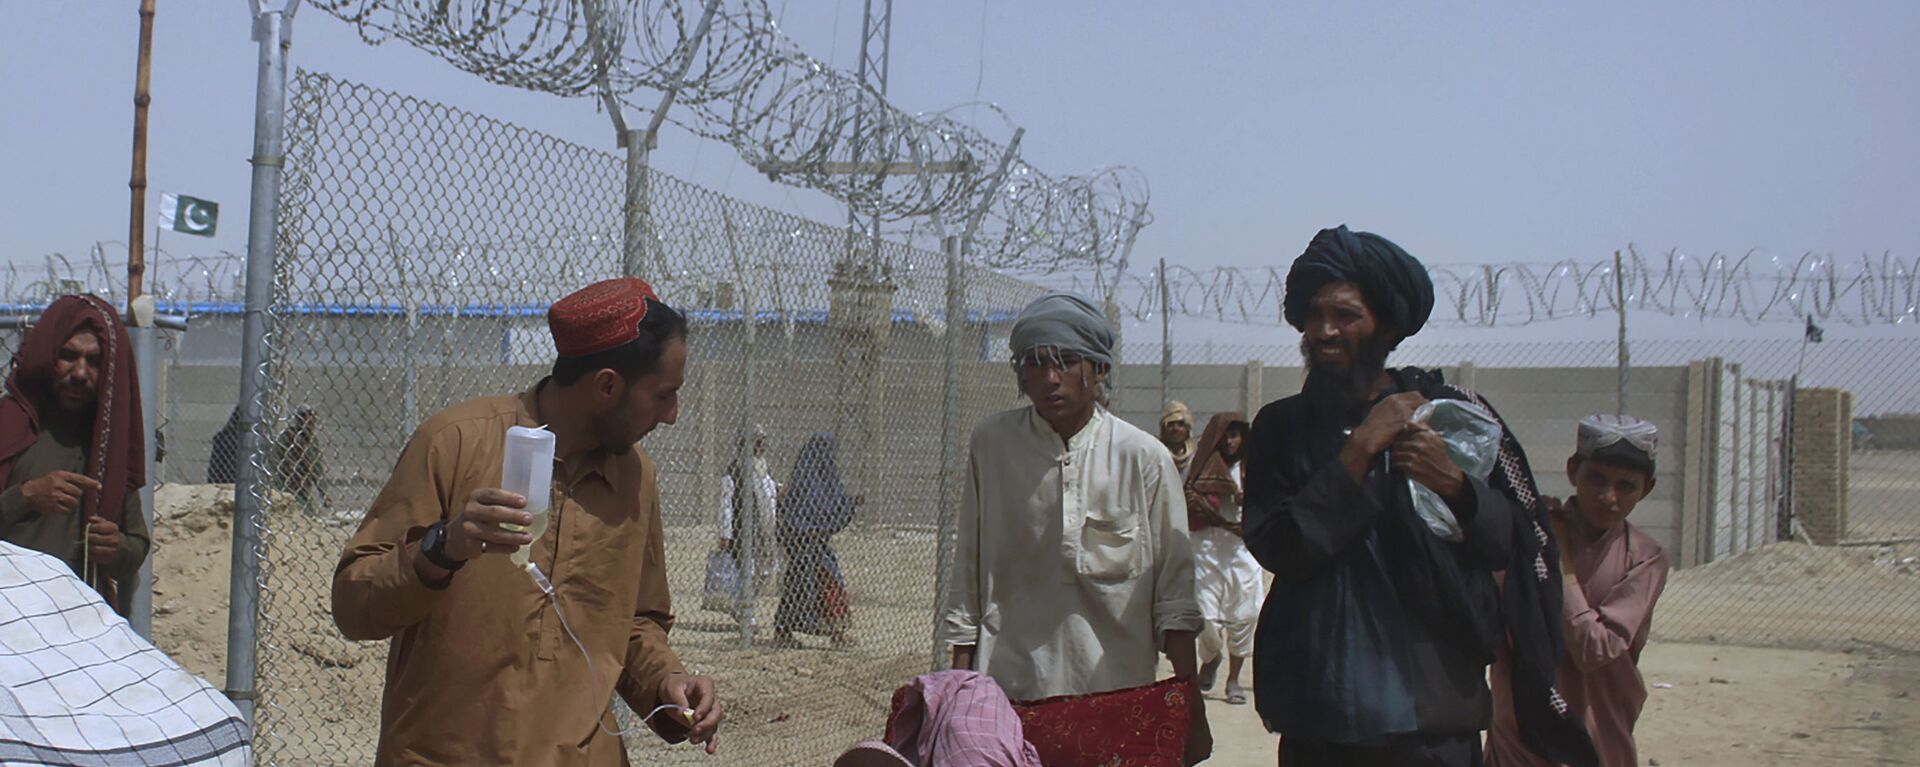 Афганские беженцы въезжают в Пакистан через пограничный переход в Чамане - Sputnik Тоҷикистон, 1920, 18.04.2022